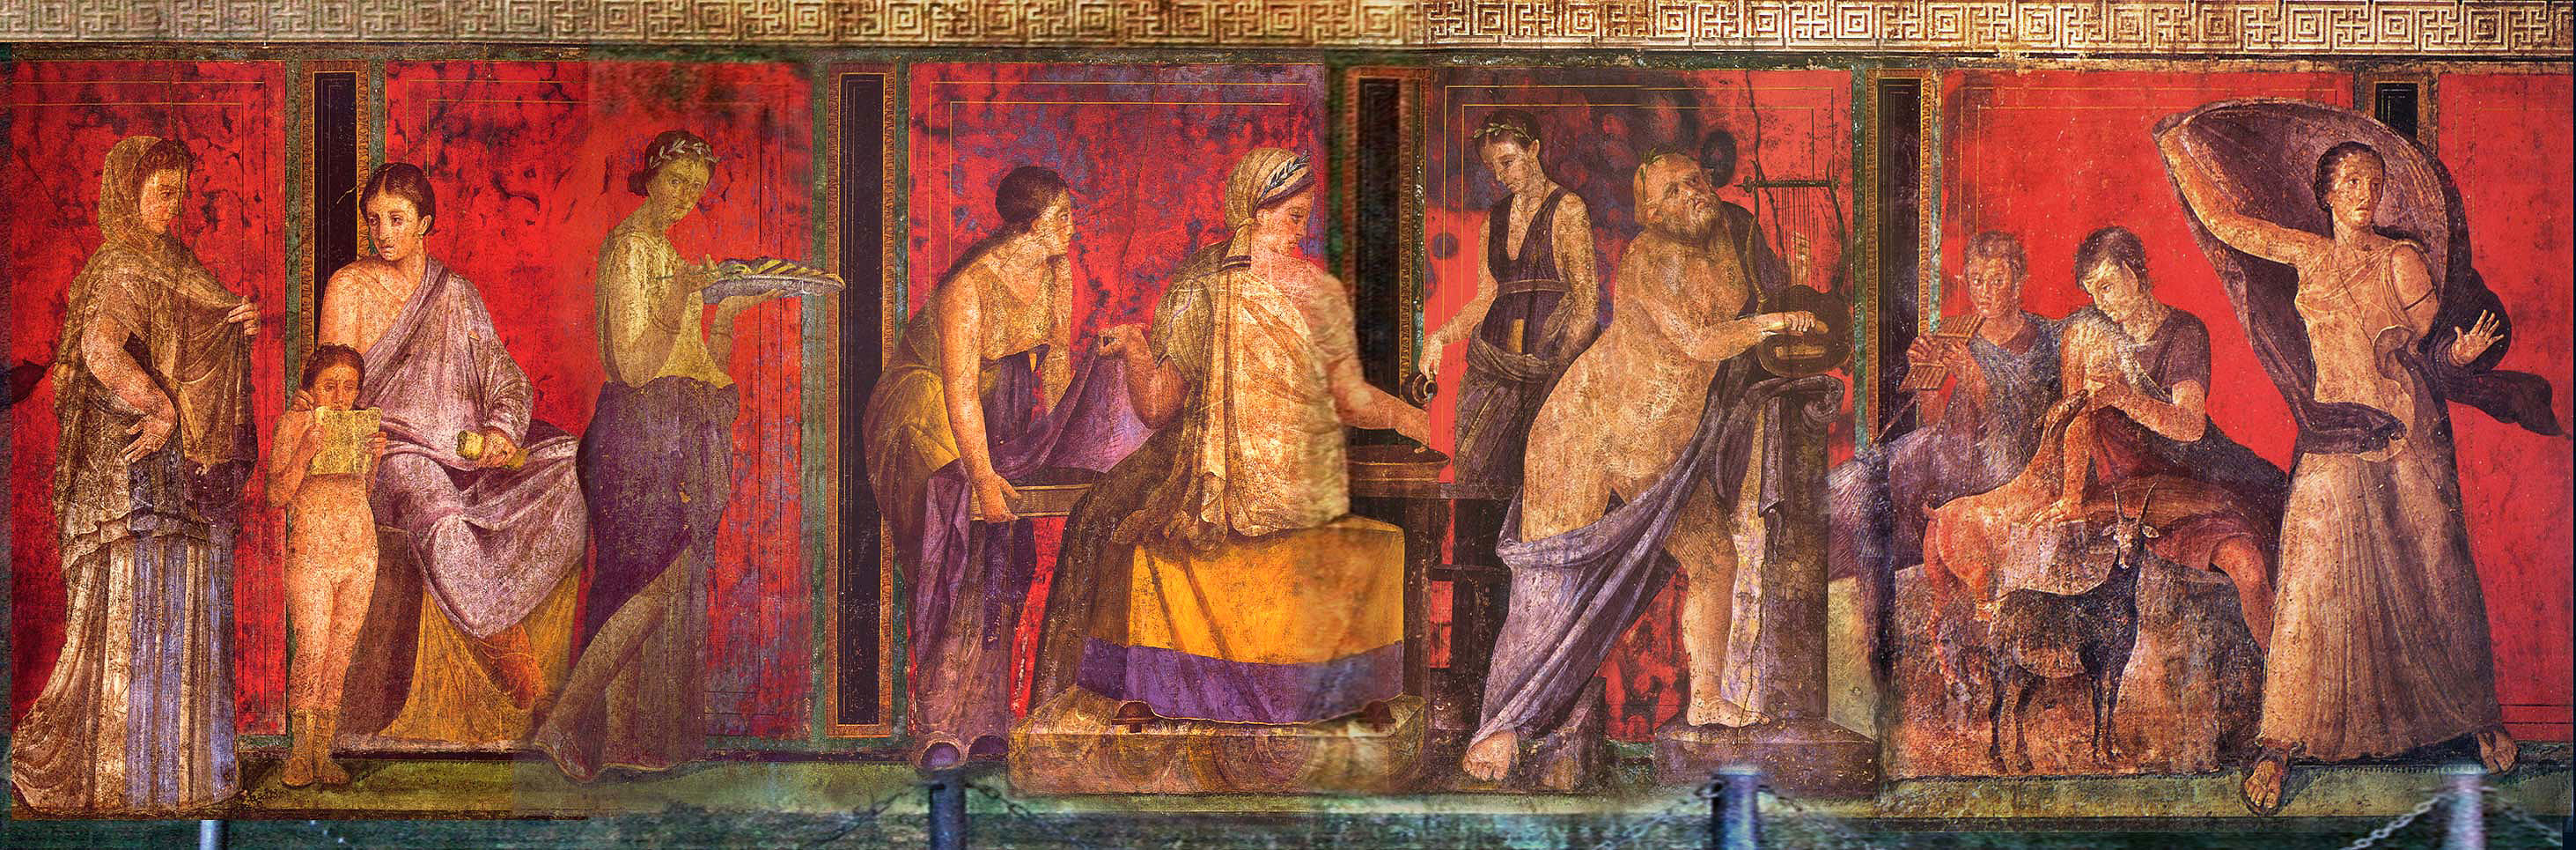 Sangue, Gens, Genius: riti familiari a Roma antica